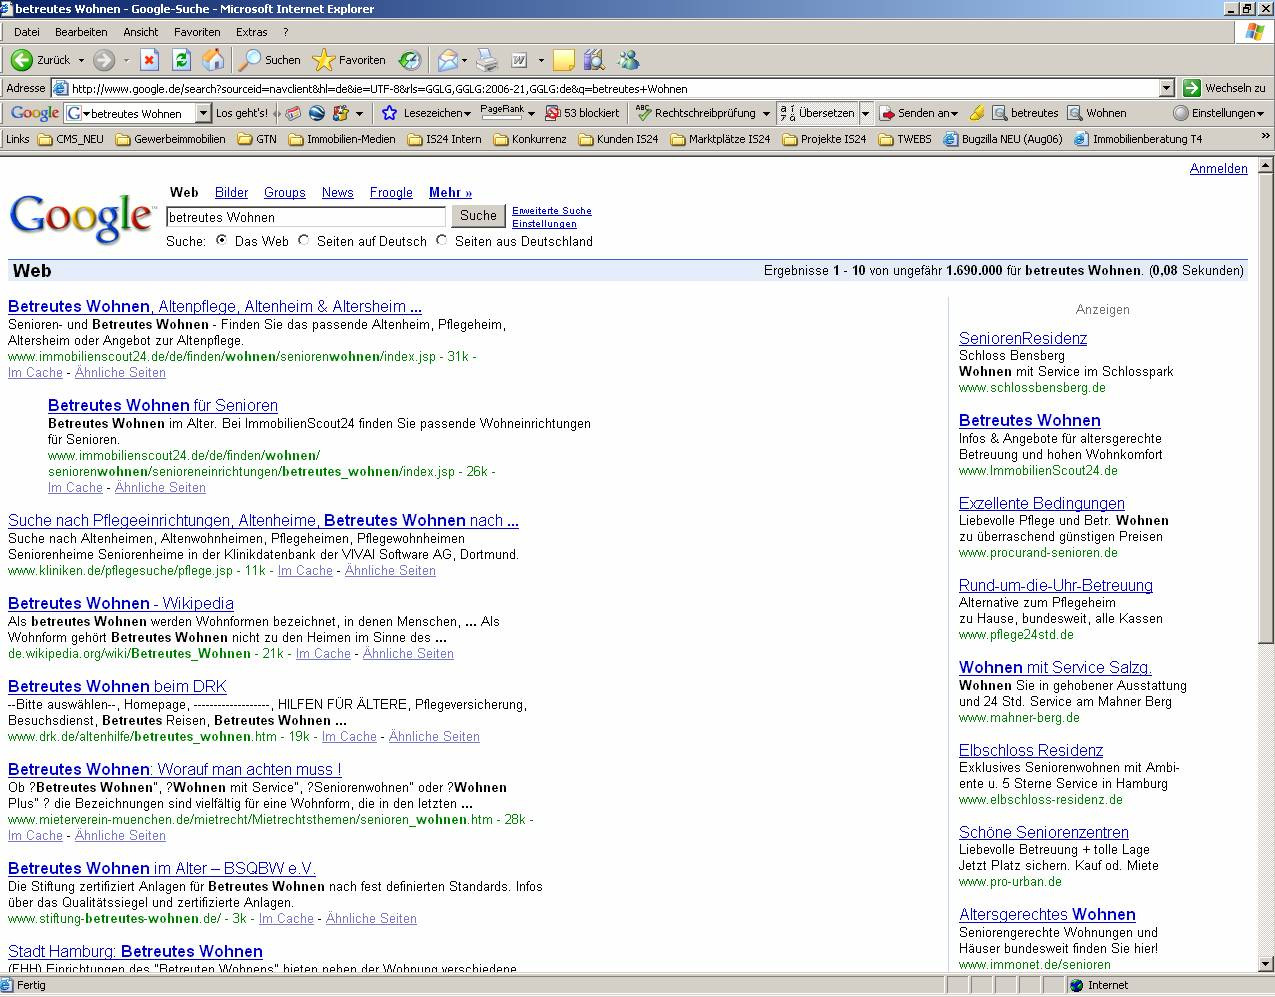 Suchmaschinen-Optimierung für 1 2 1 2 3 4 5 6 Suchbegriffeingabe bei Google Google Trefferliste erste Seite* Link zur Rubrik bei IS24 Link auf